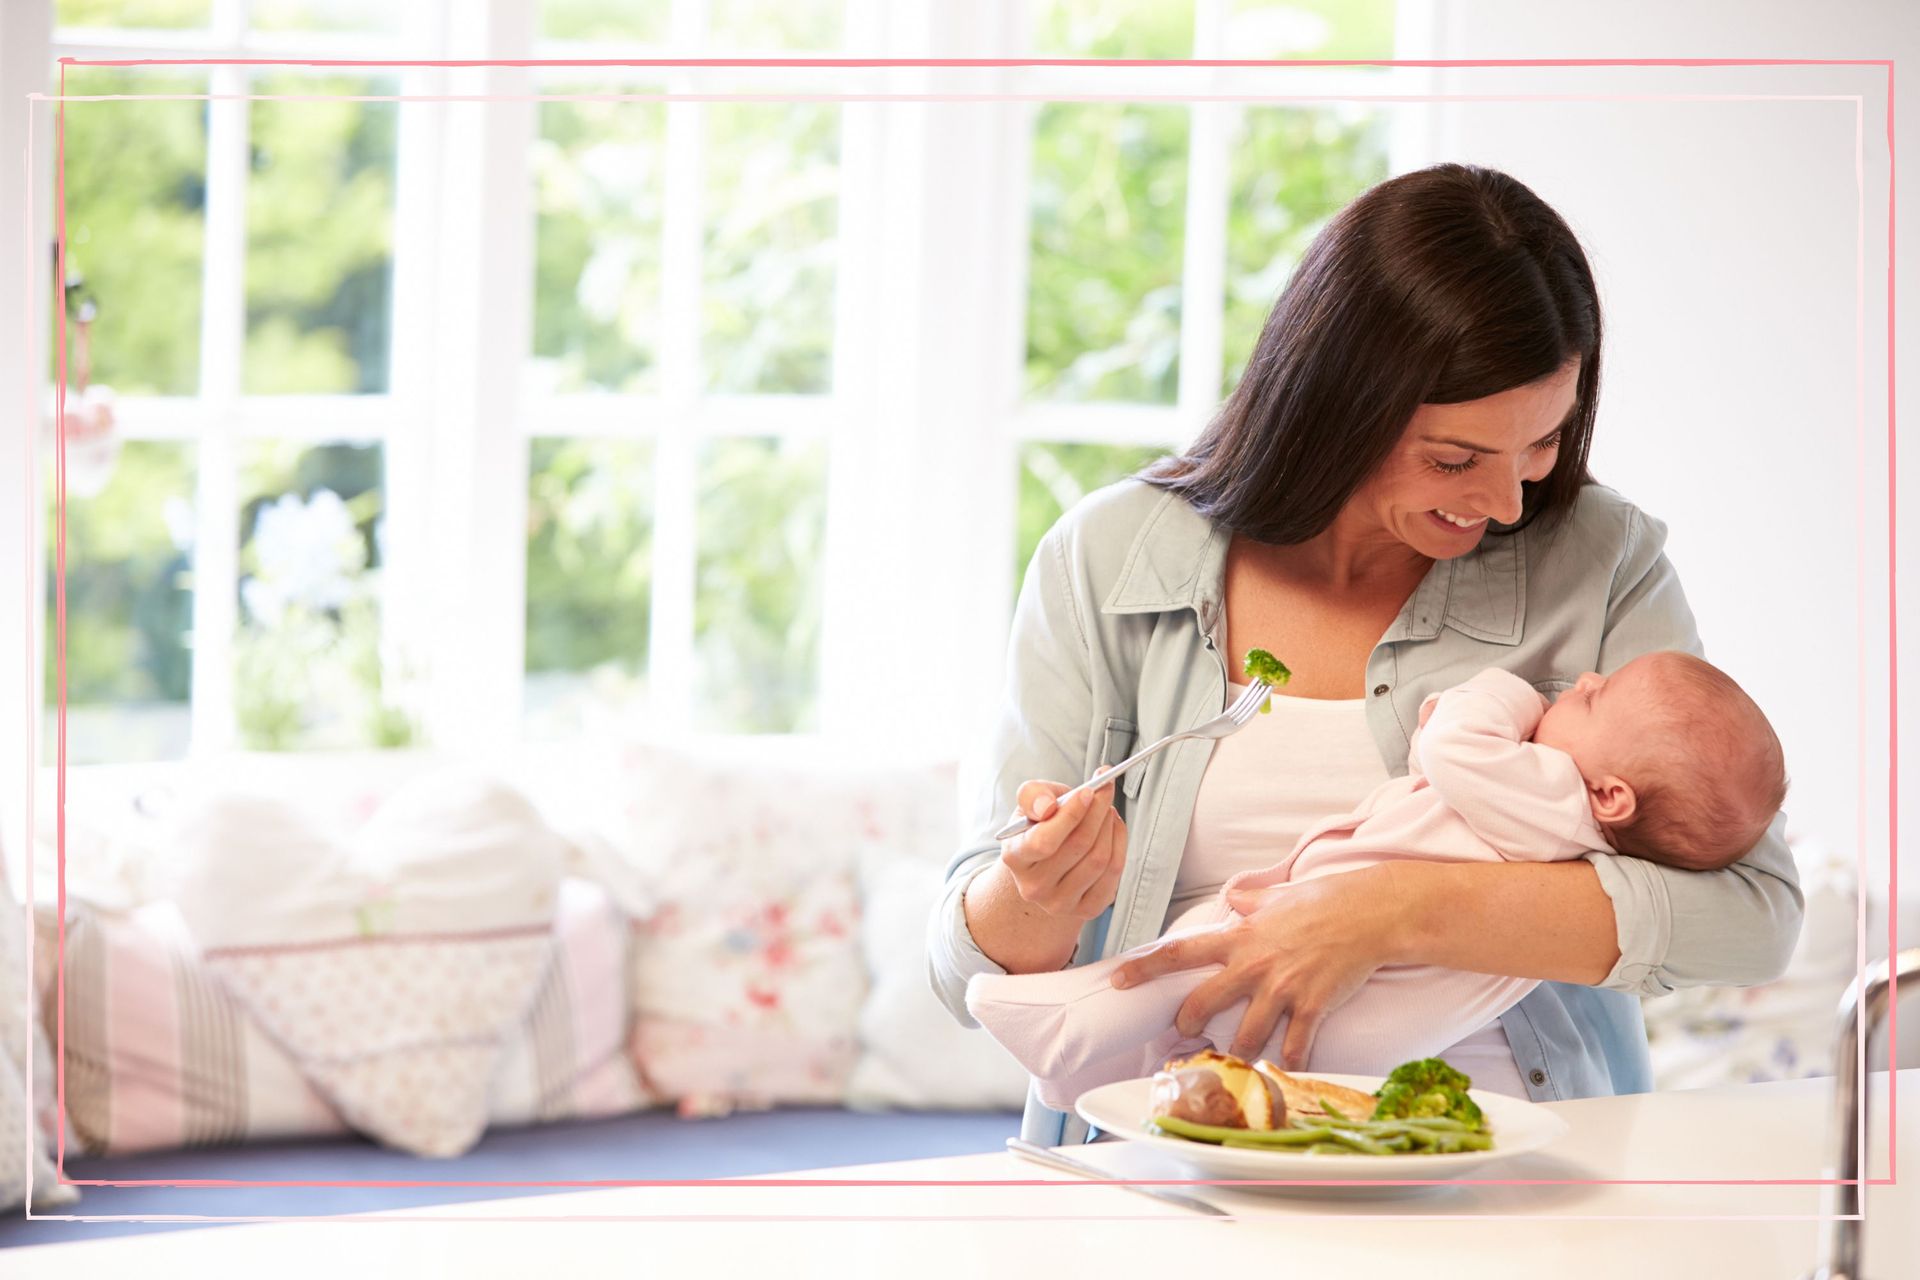 Г кормящей маме. Питание в послеродовом периоде. Кормление ребенка. Что есть грудной ребенок у мамы. Мама с грудным ребенком.